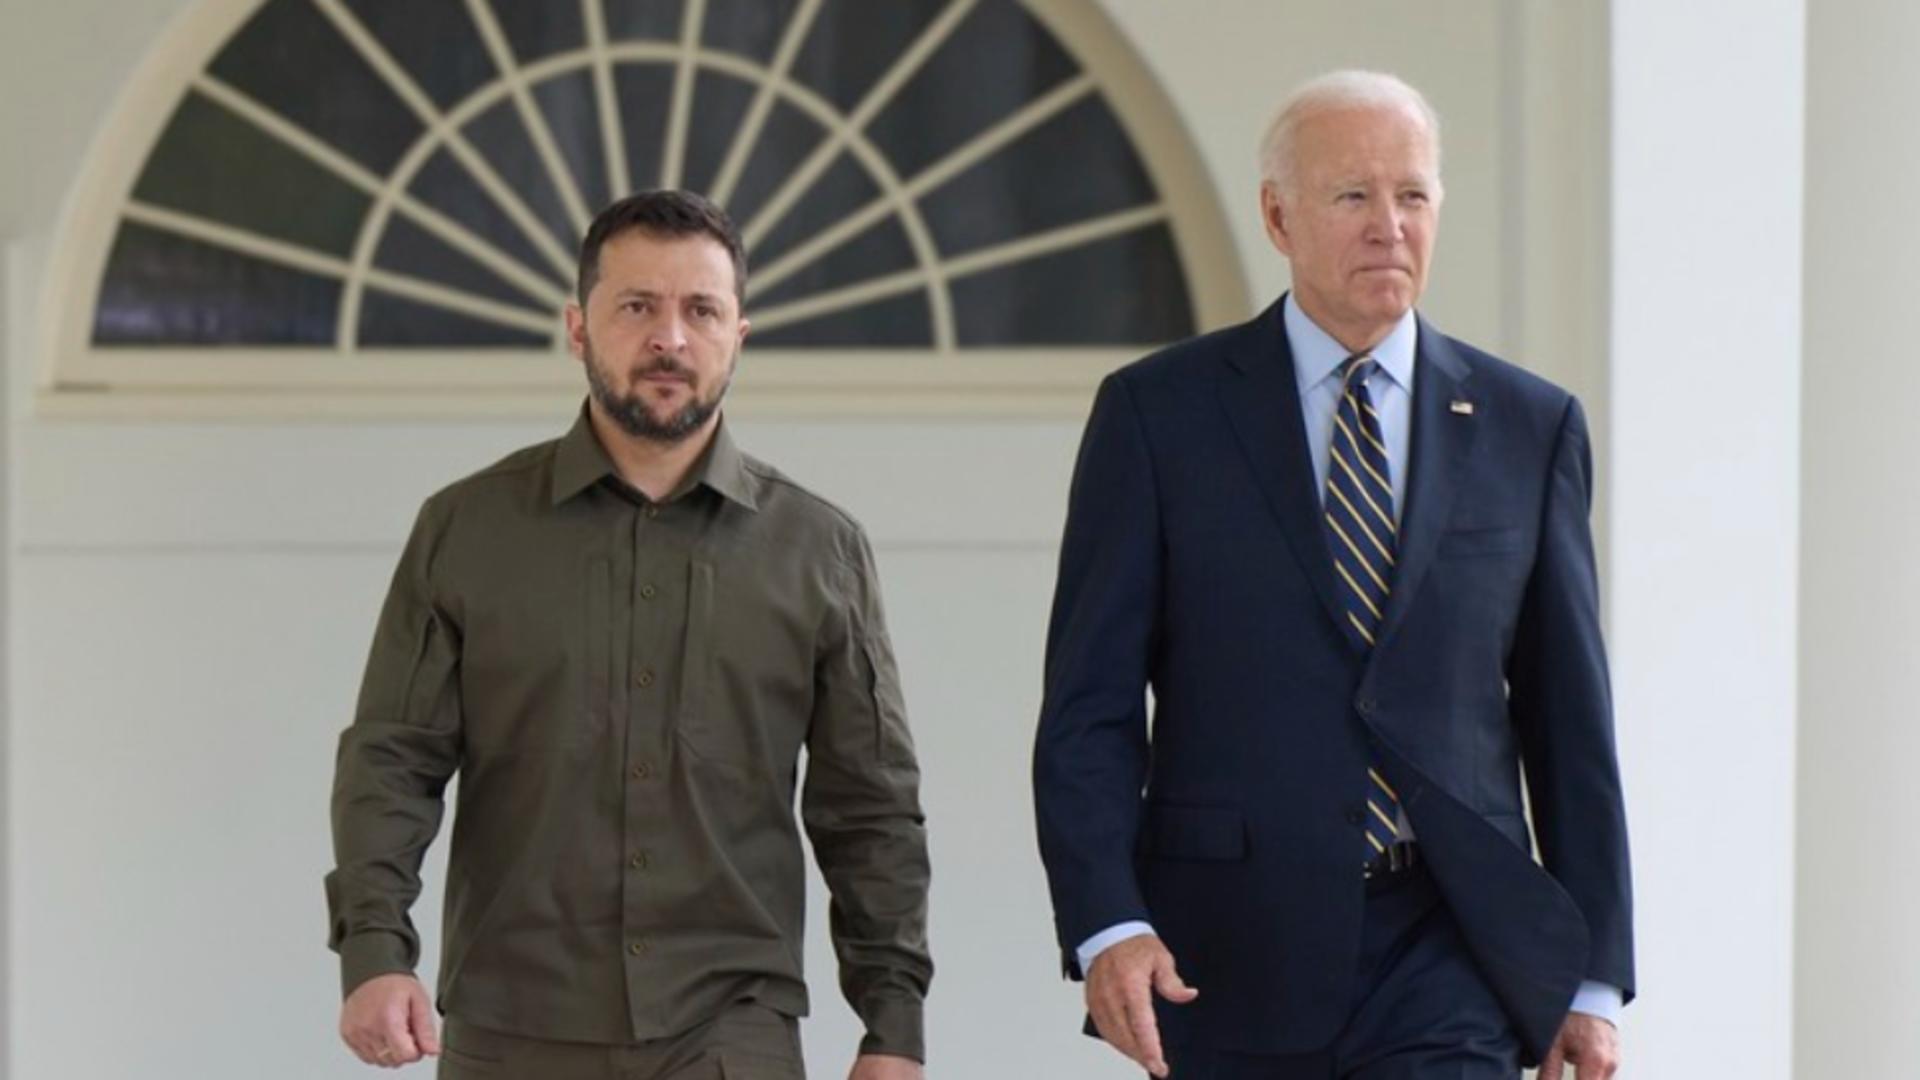 Anunțul SUA care-l înfurie pe Putin, în plin scandal în SUA - Zelenski, invitat oficial de Joe Biden la Casa Albă, pe 12 decembrie